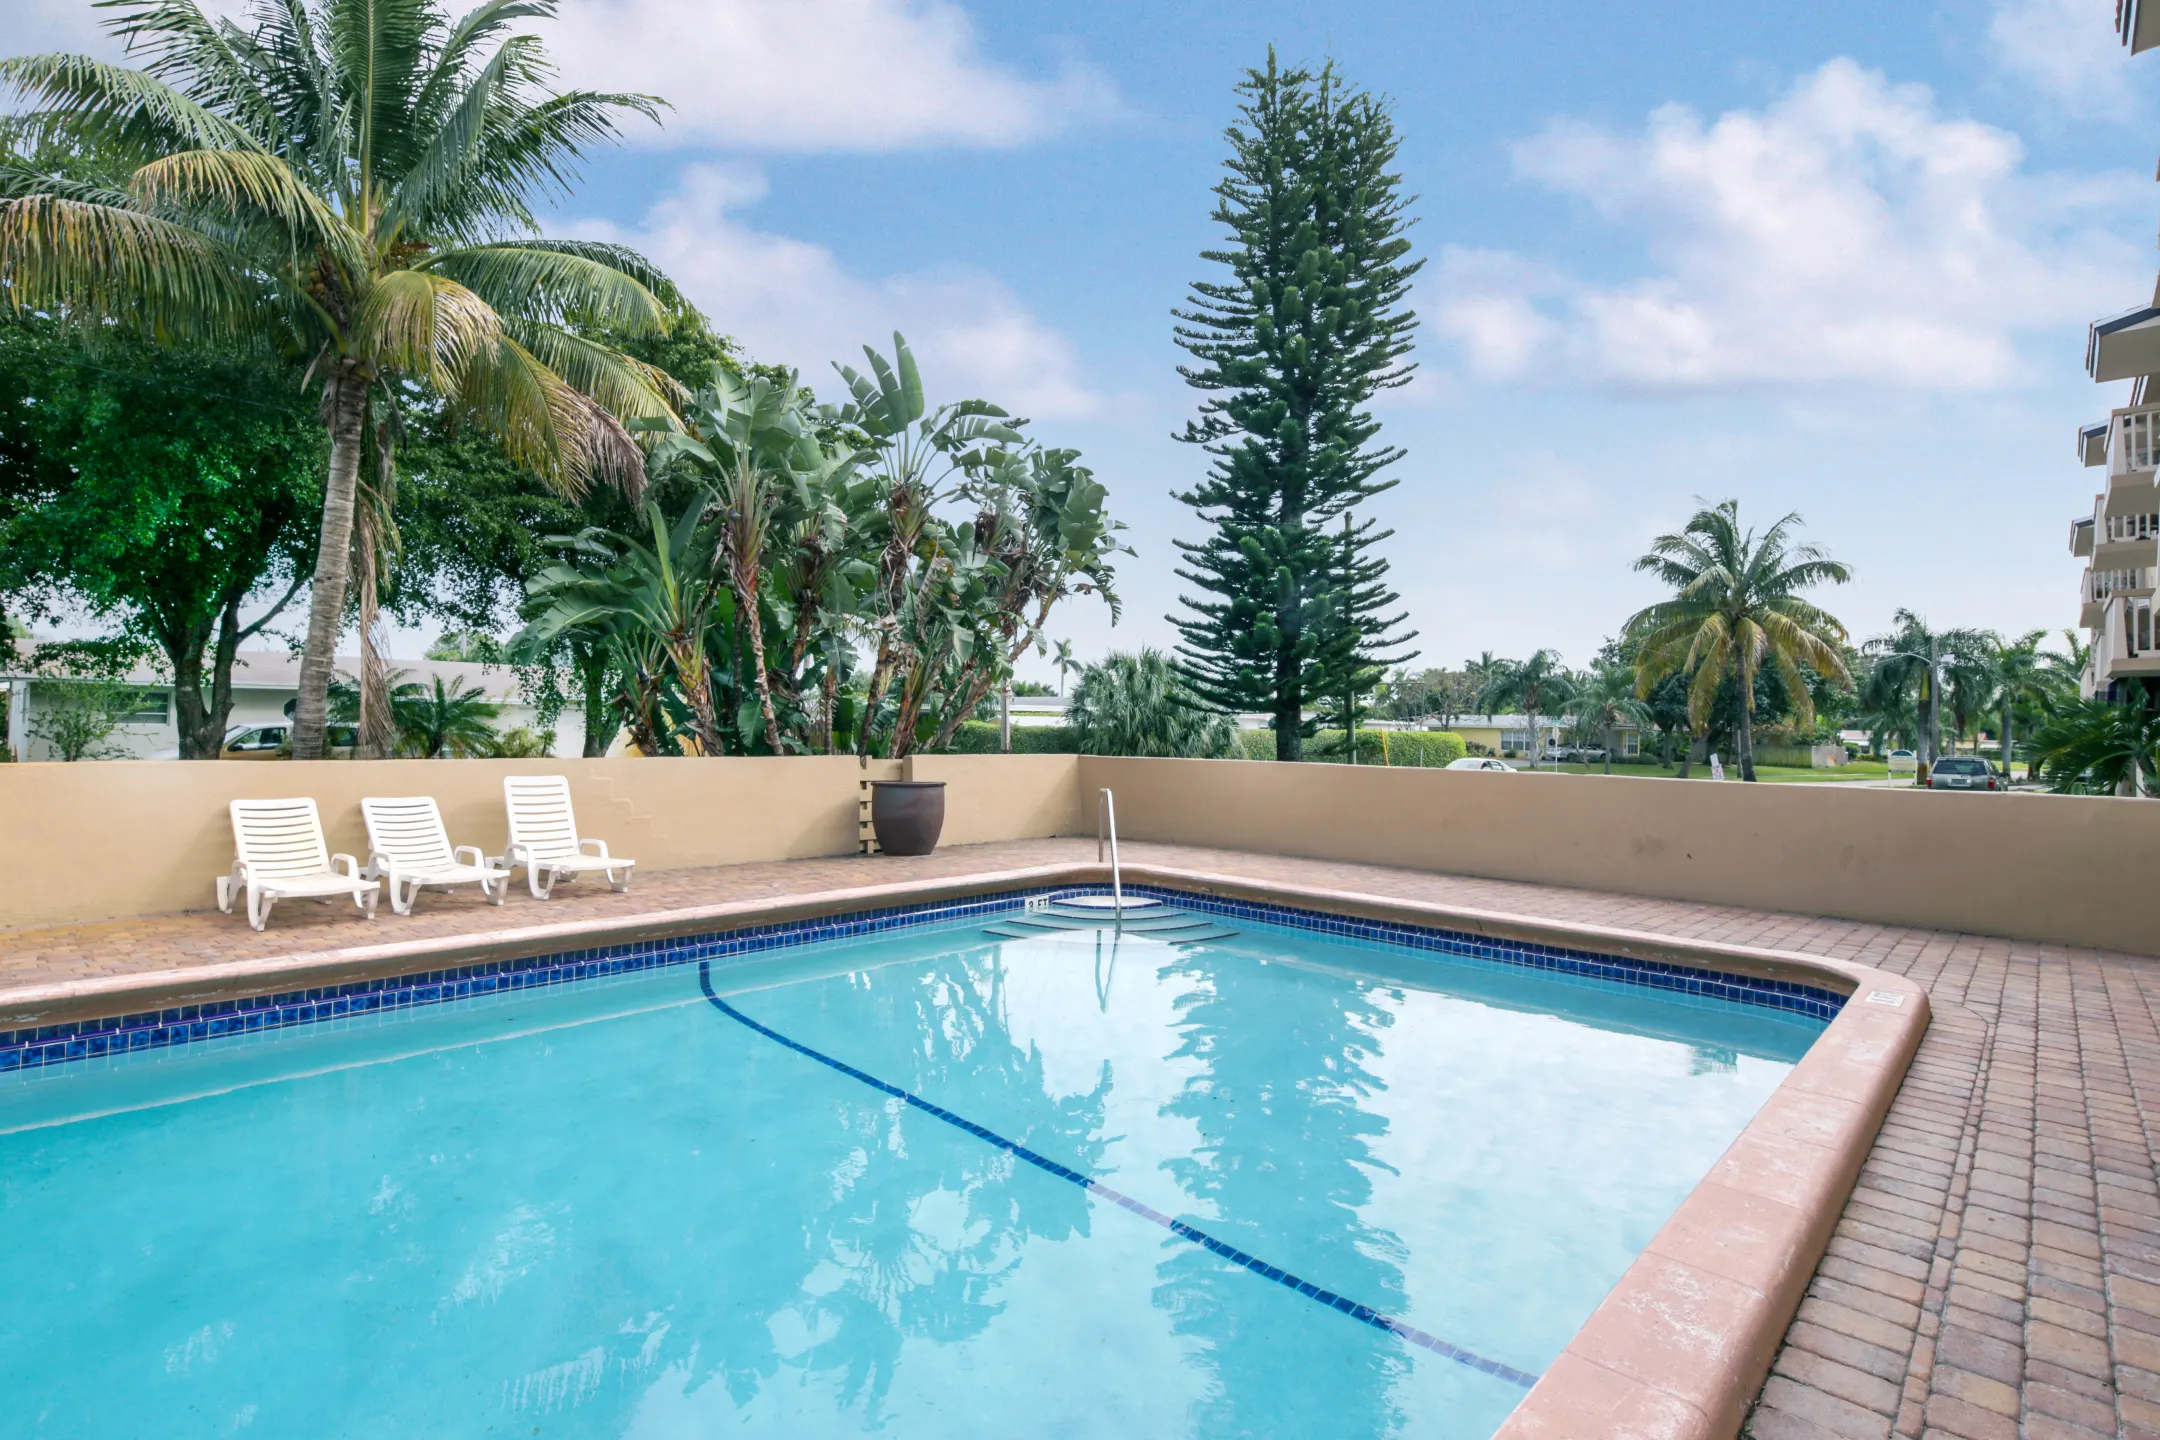 Pool - The Apartment People - Deerfield Beach, FL